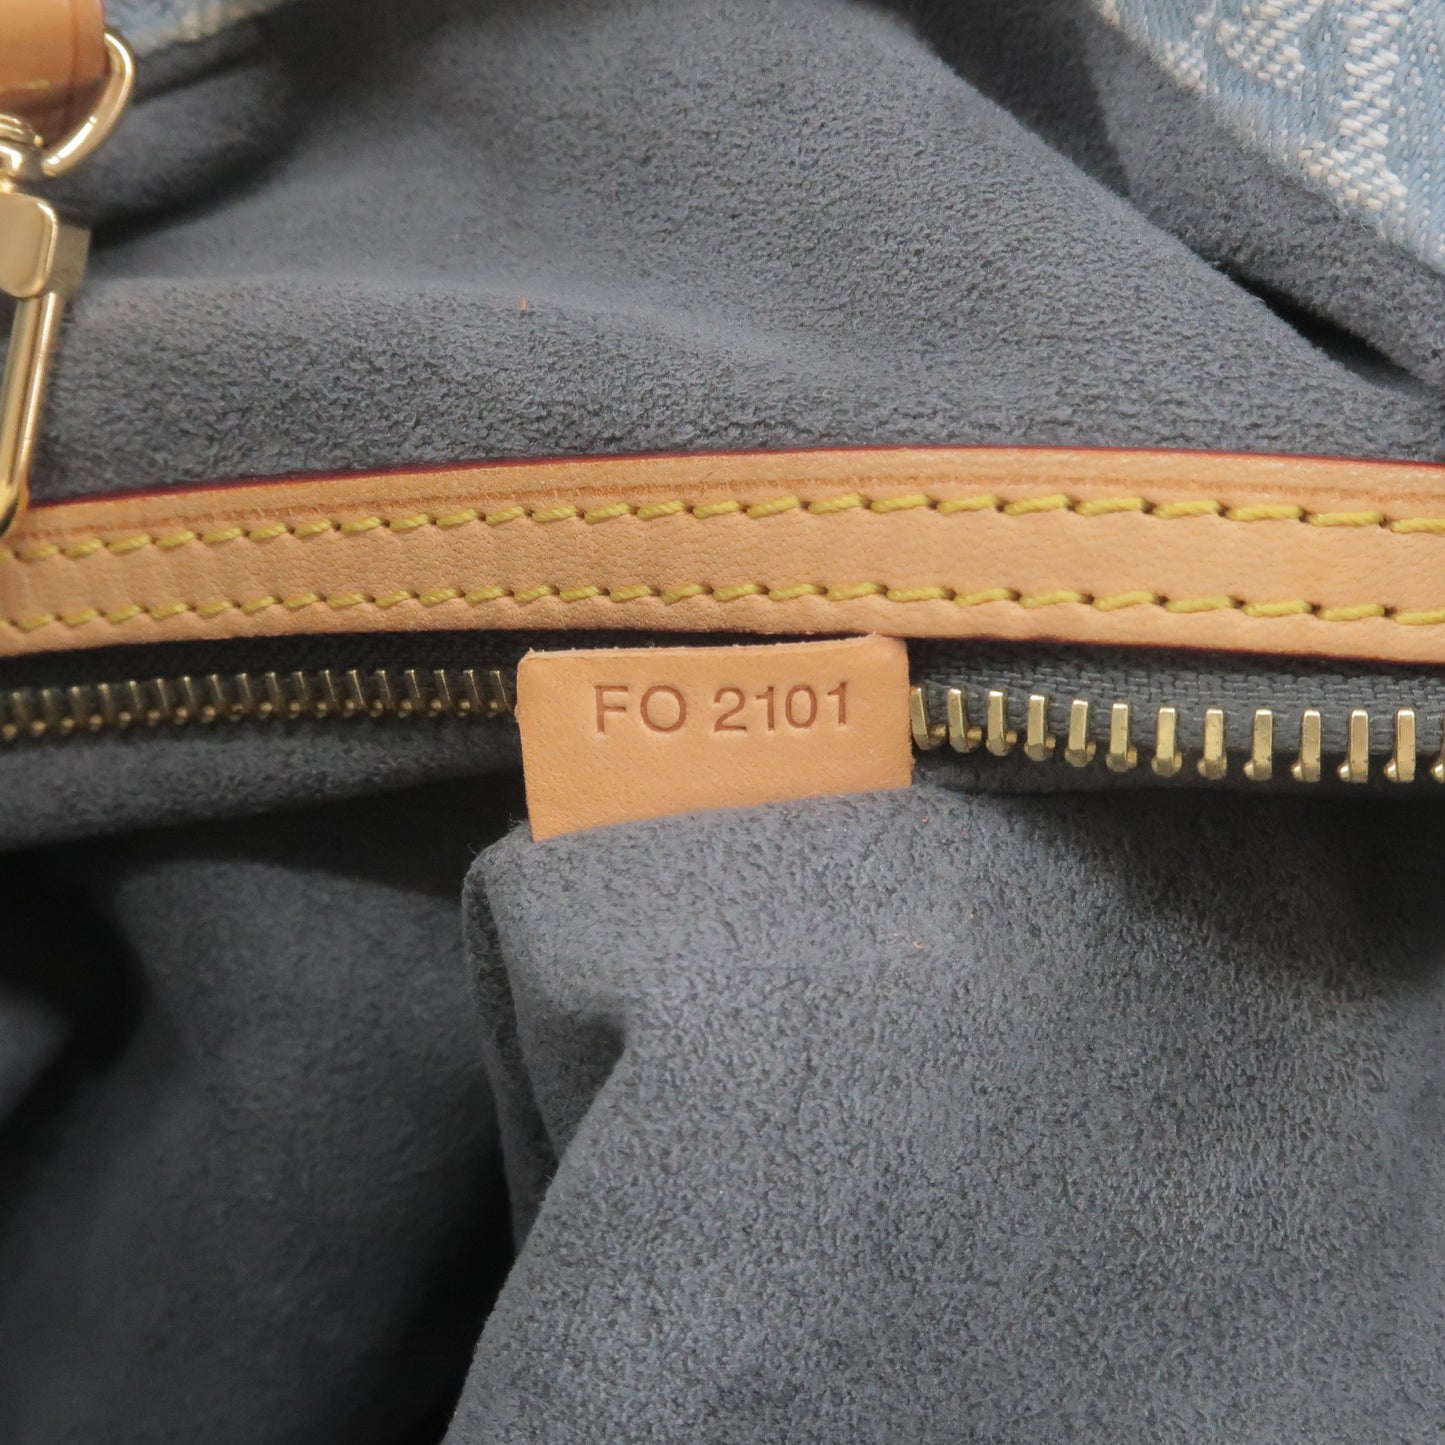 M40492 – dct - ep_vintage luxury Store - Denim - Shoulder - Louis - Vuitton  - GM - Monogram - Bag - Белая блузка louis vuitton - Daily